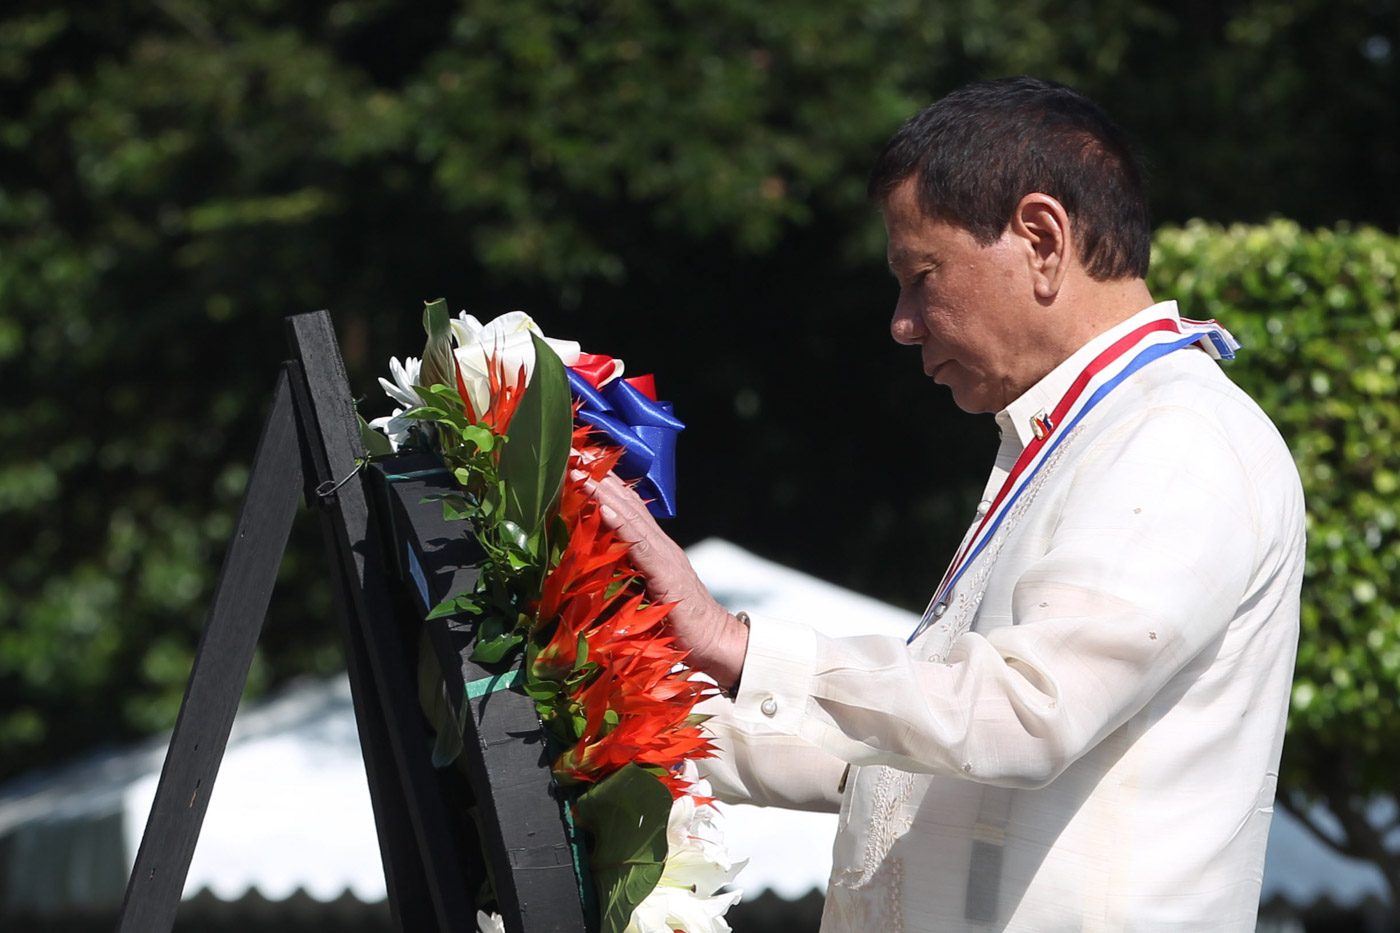 Pada Hari Bonifacio, Duterte menyerukan pembebasan dari kejahatan dan teror